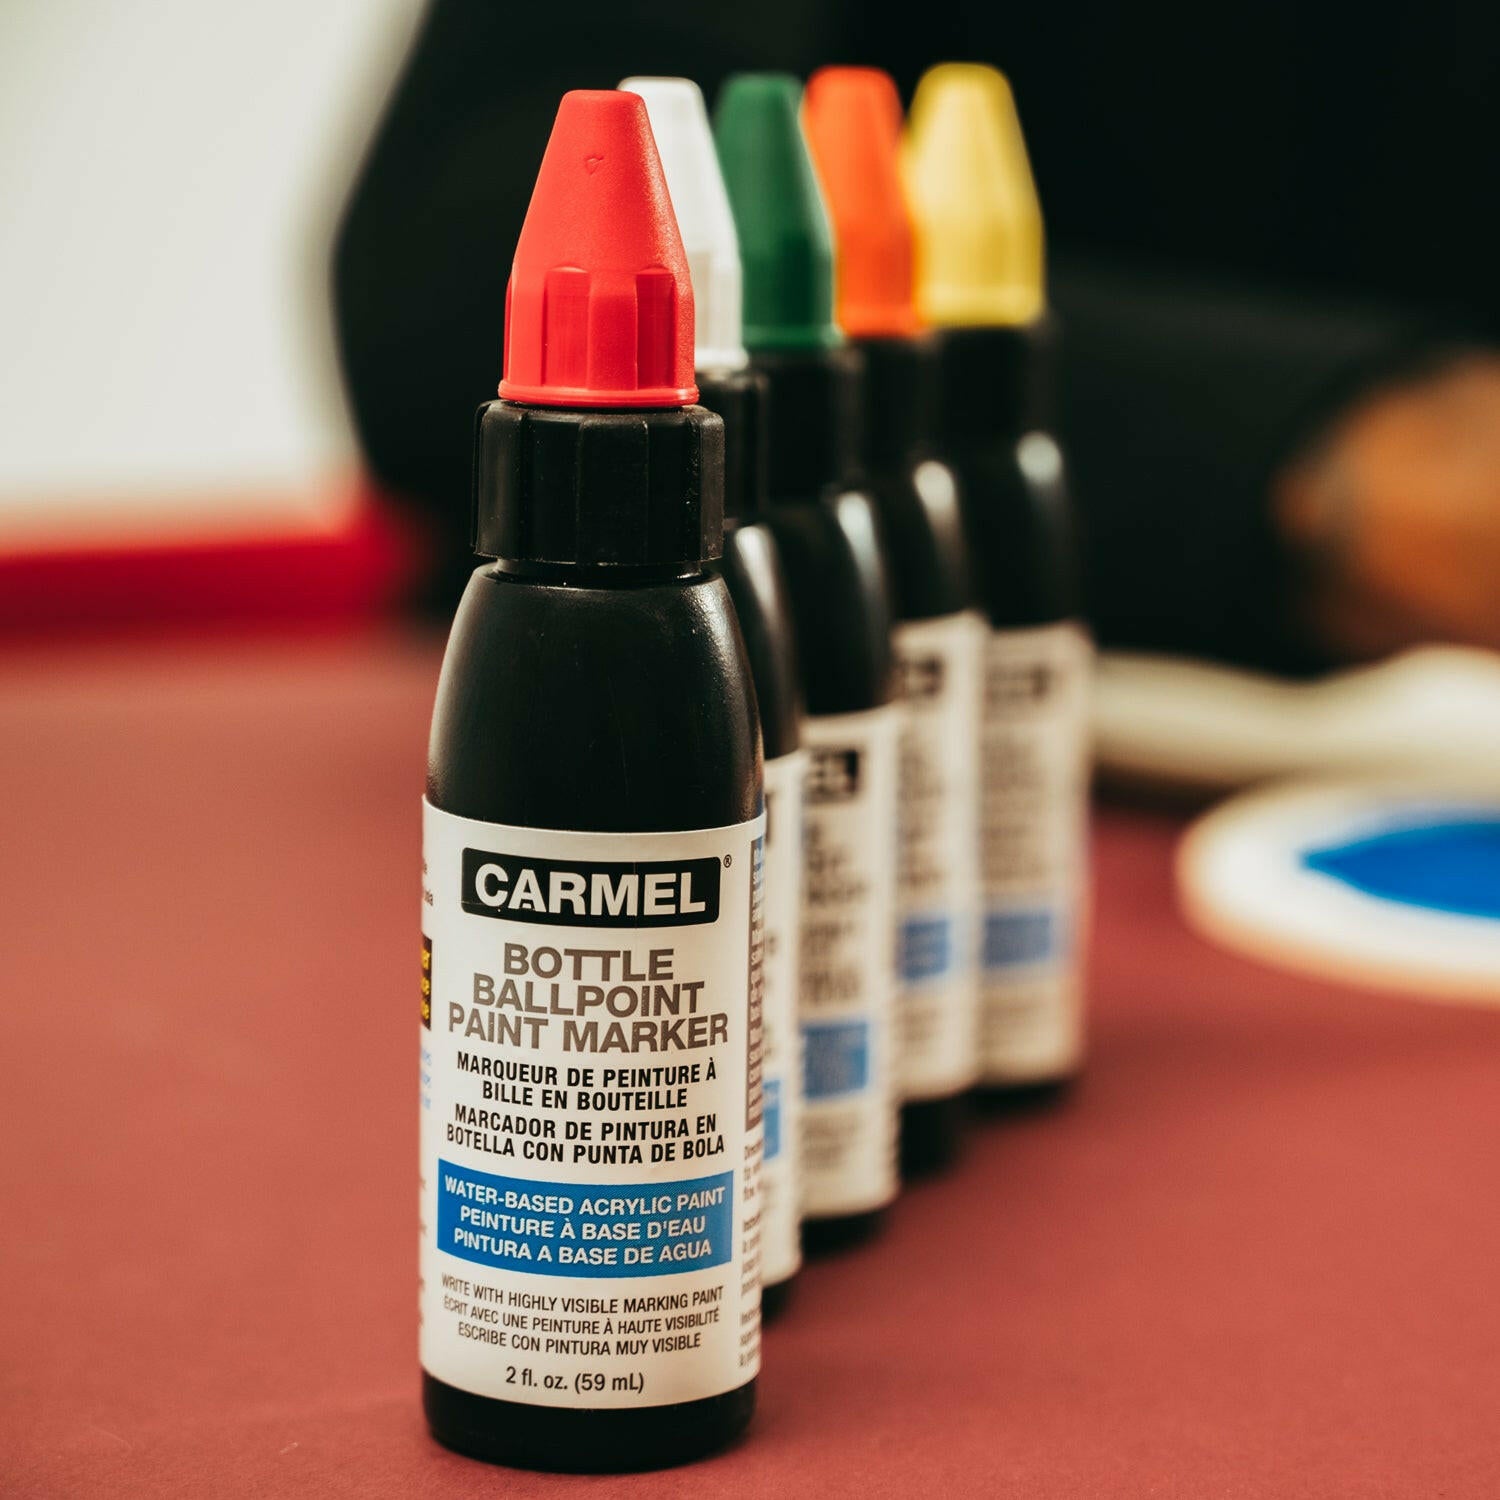 Acrylic Bottle Ballpoint Paint Marker